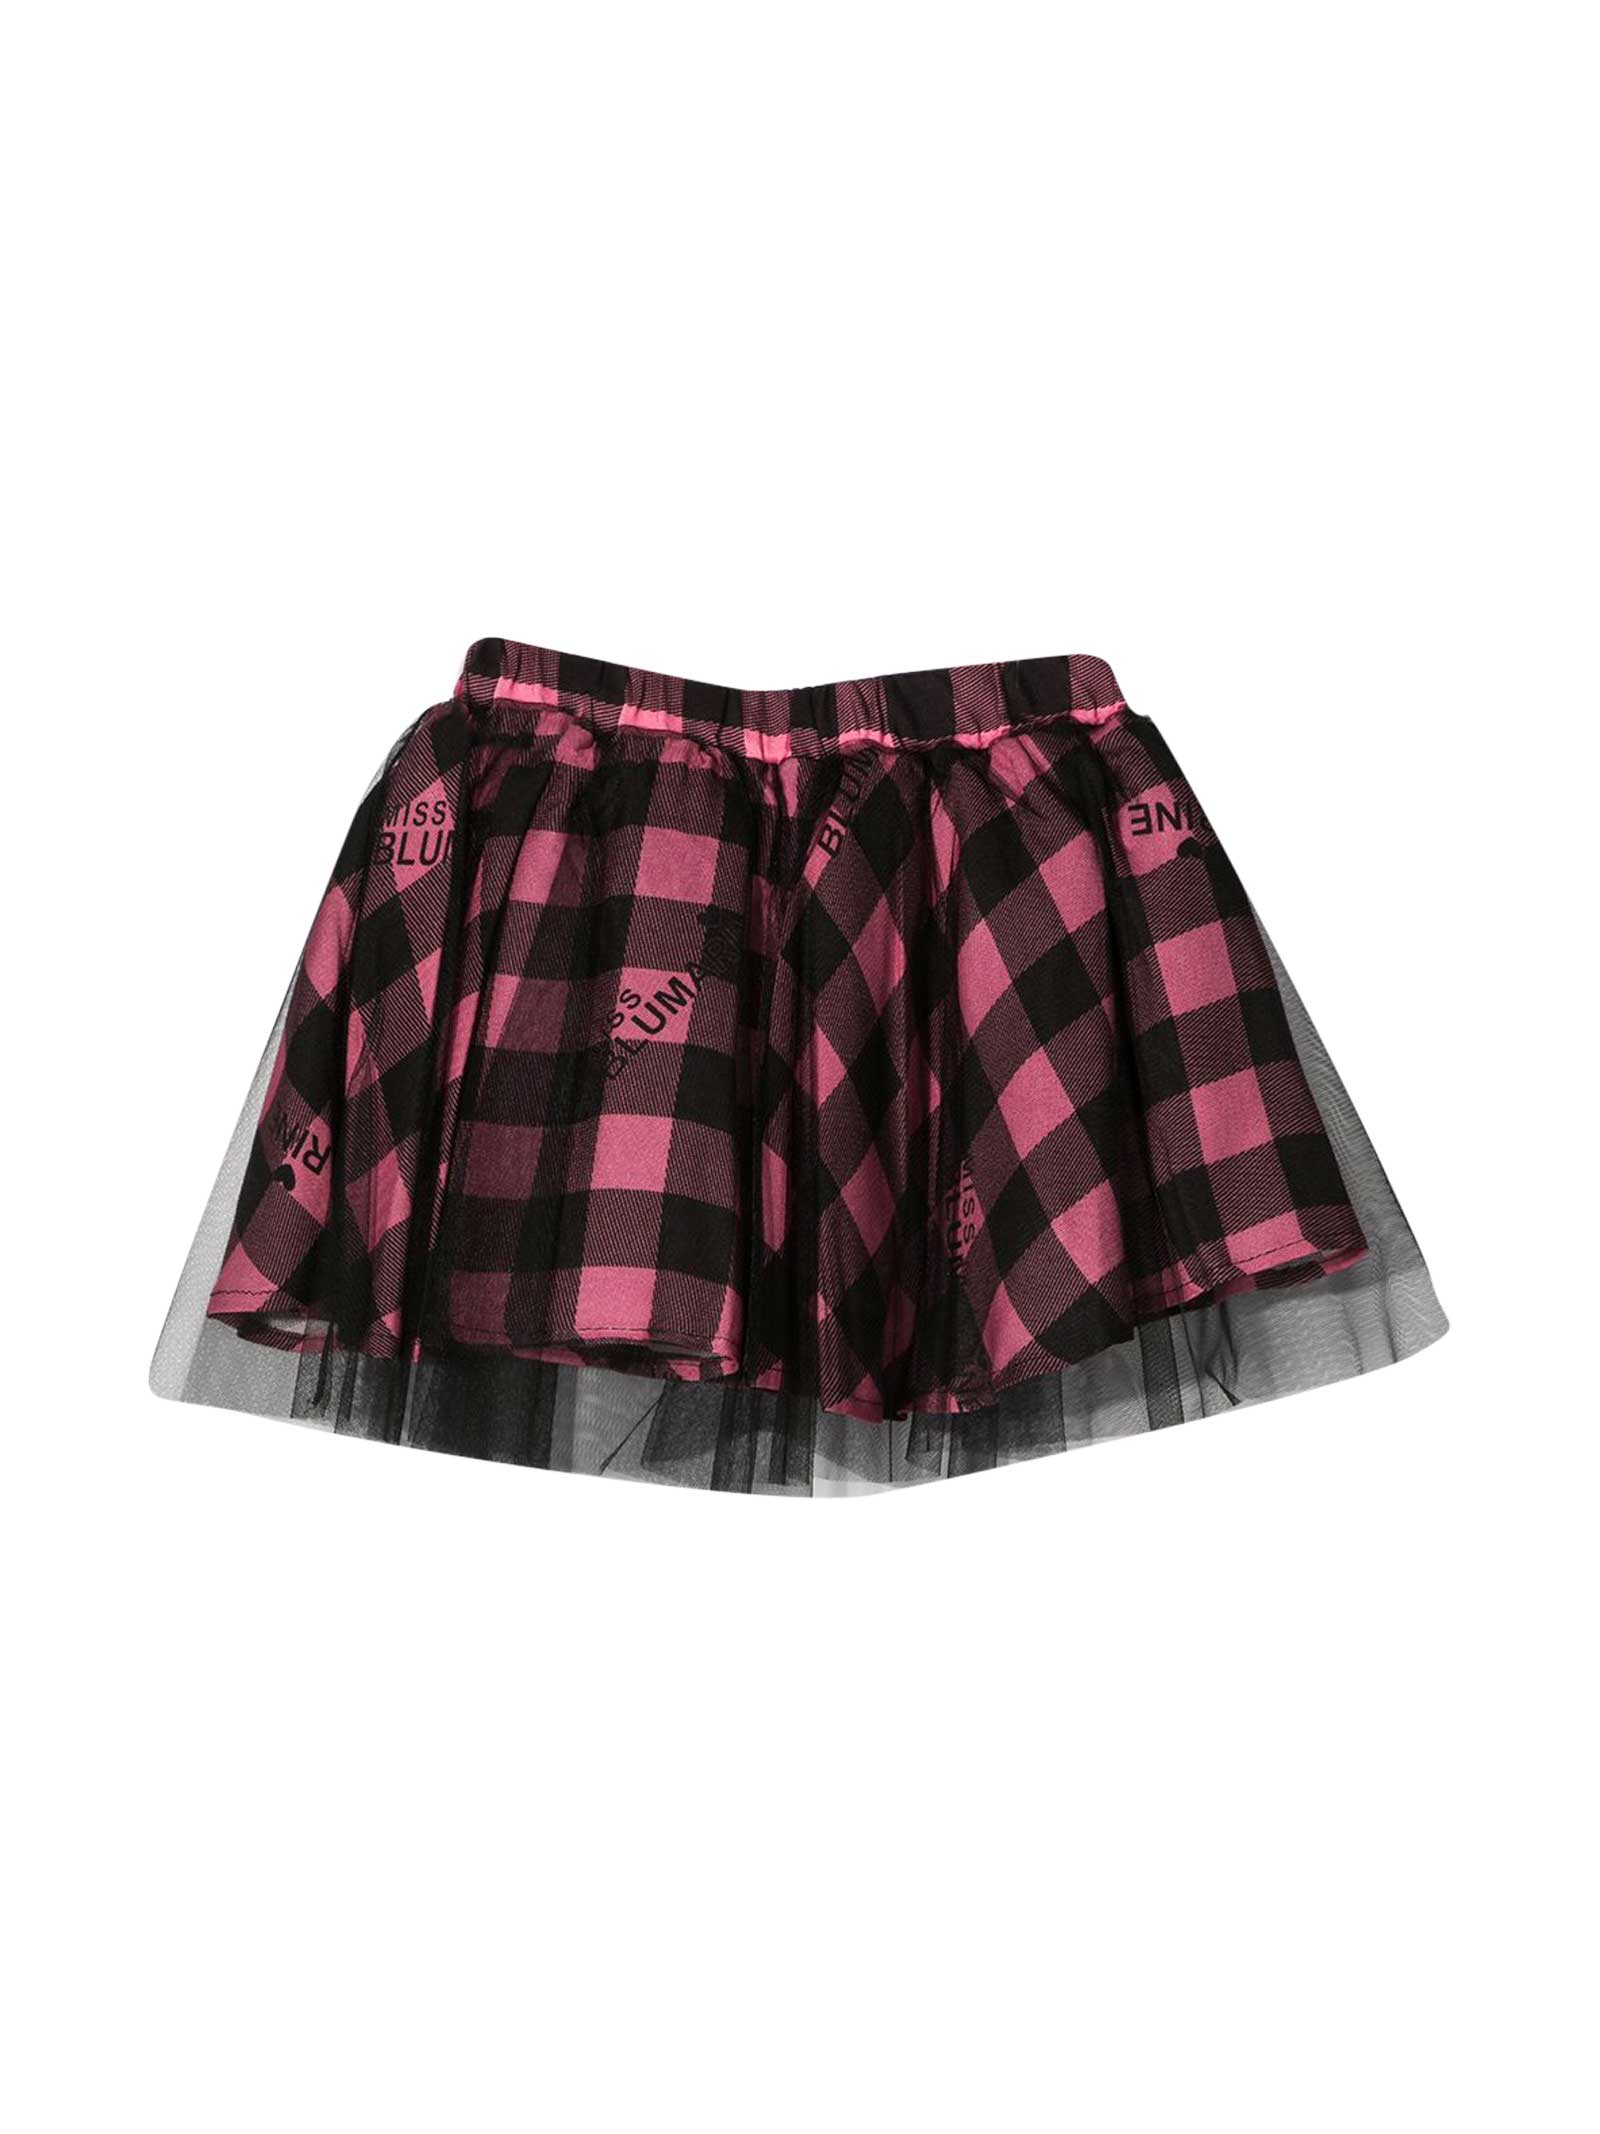 Miss Blumarine Pink Checked Skirt